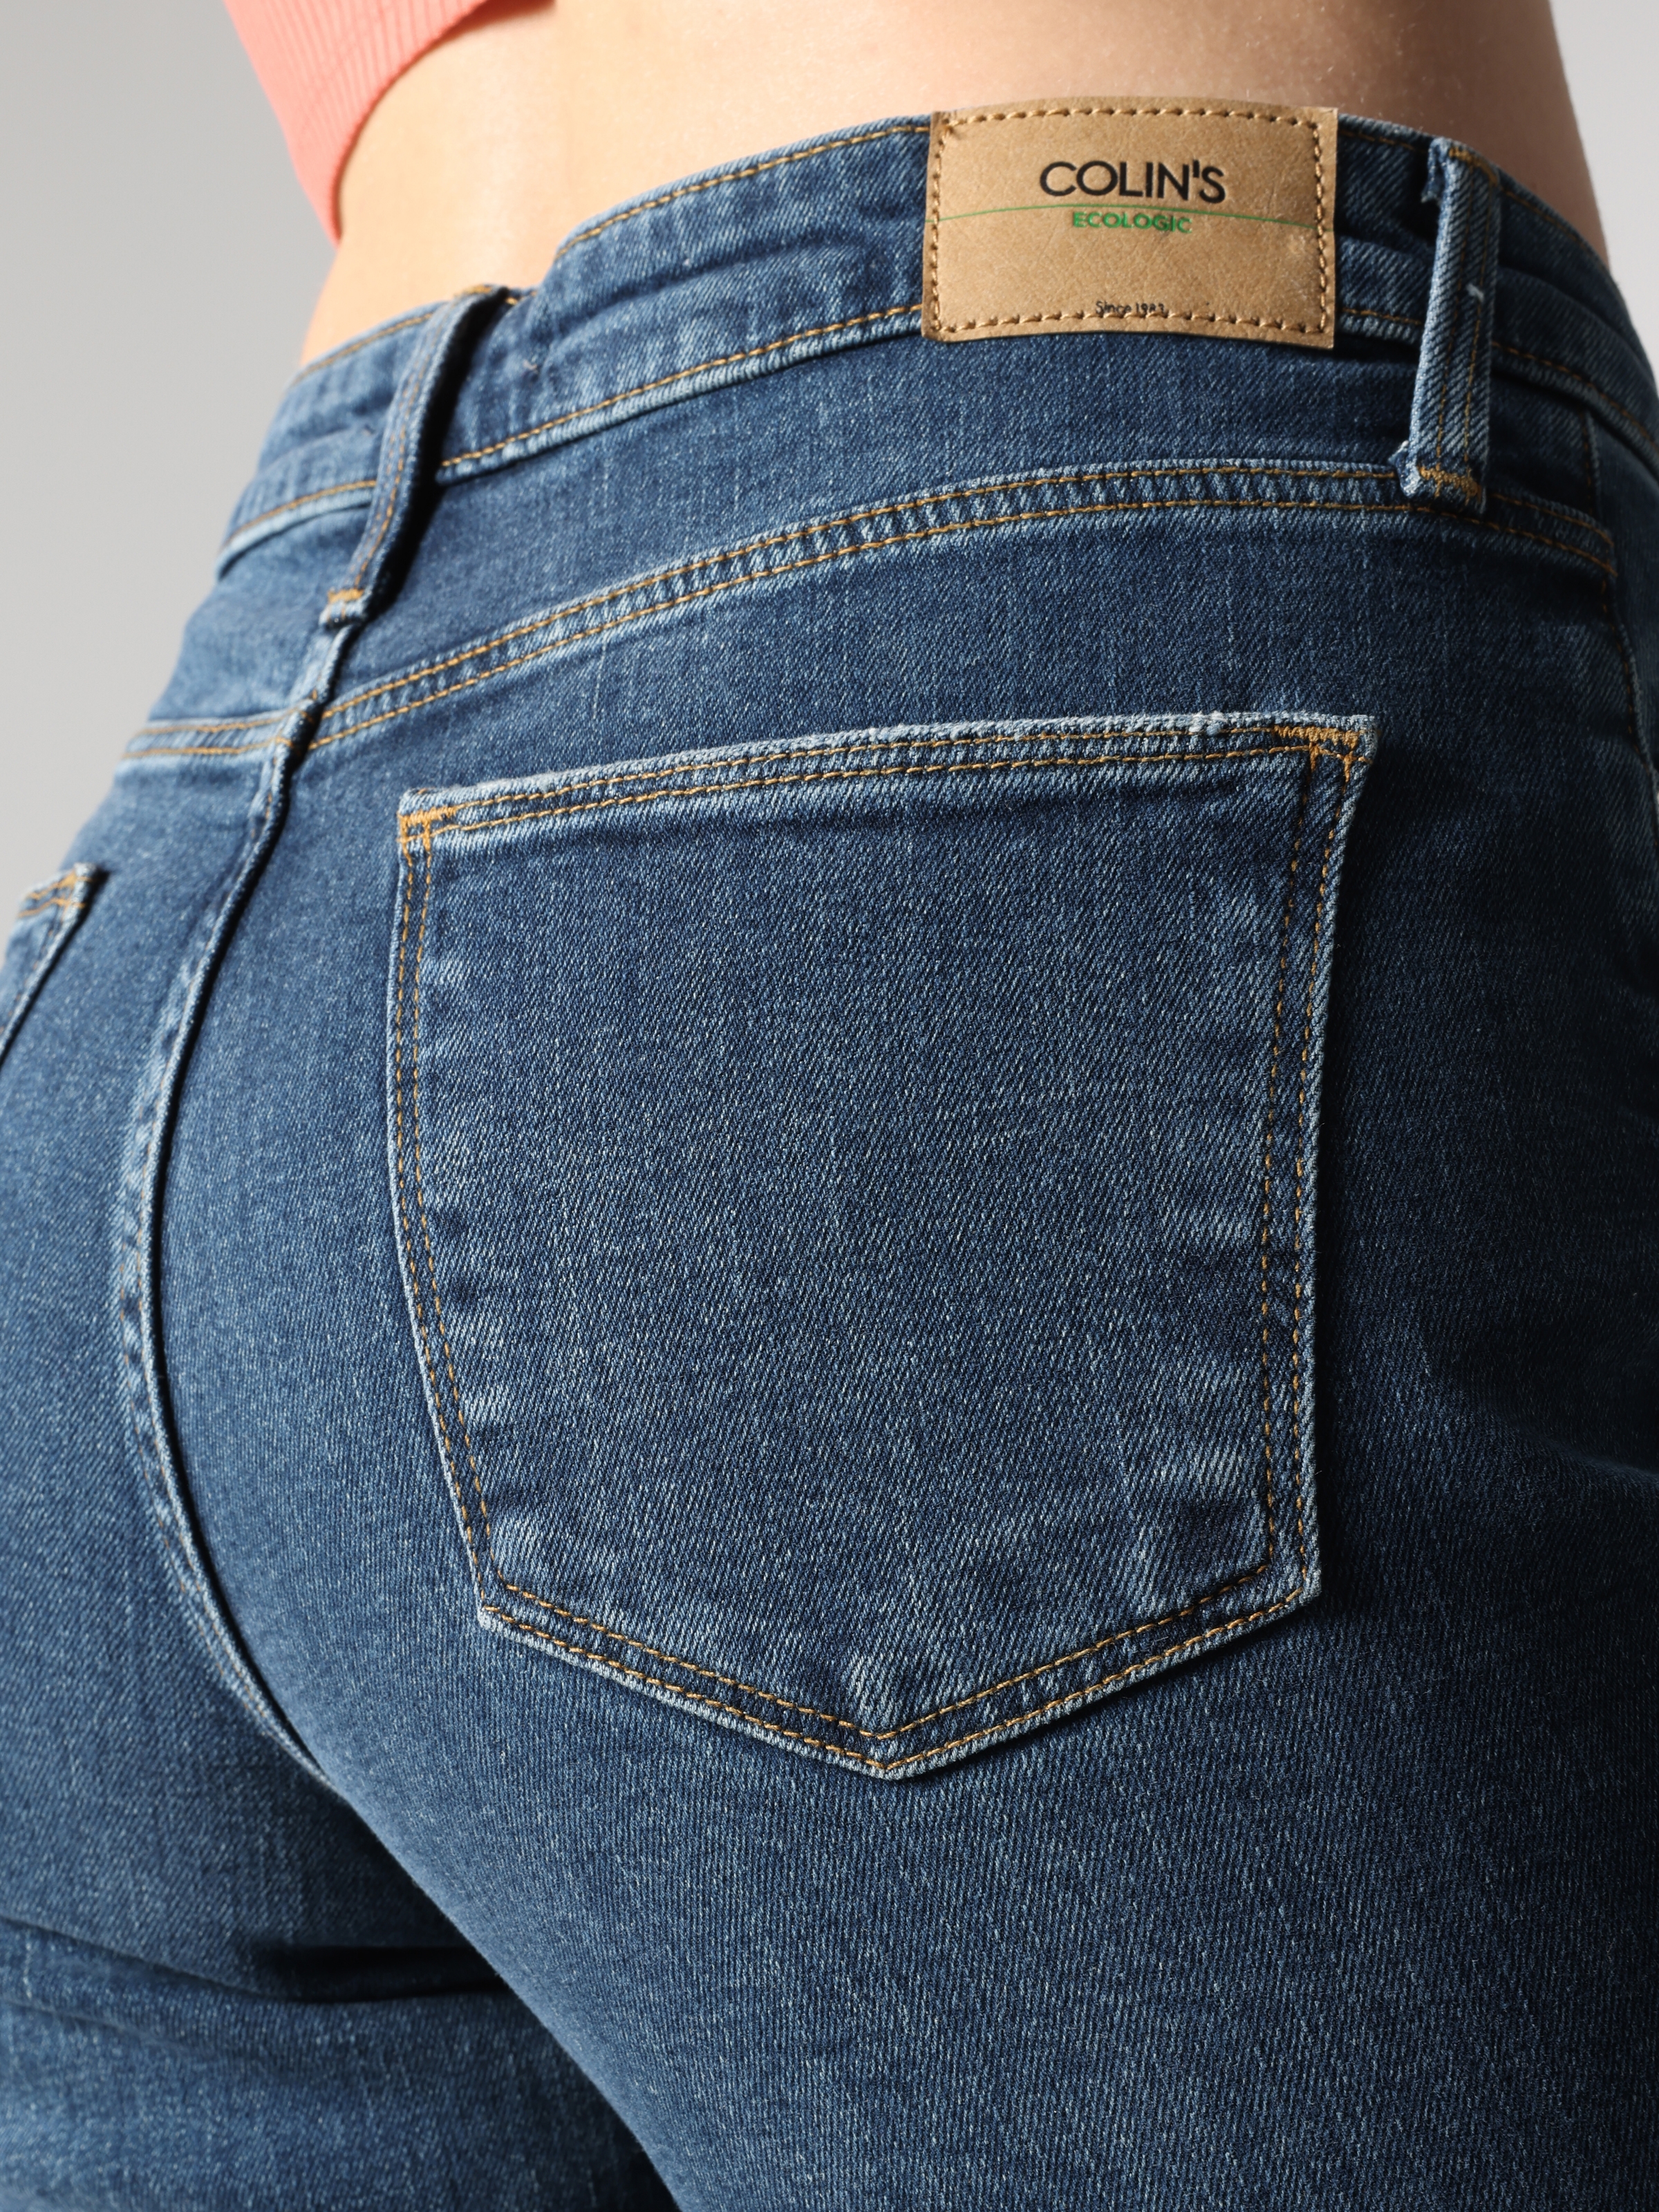 Afficher les détails de Pantalon Femme 891 Maya Coupe Slim Taille Moyenne Jambe Fuselée Bleu